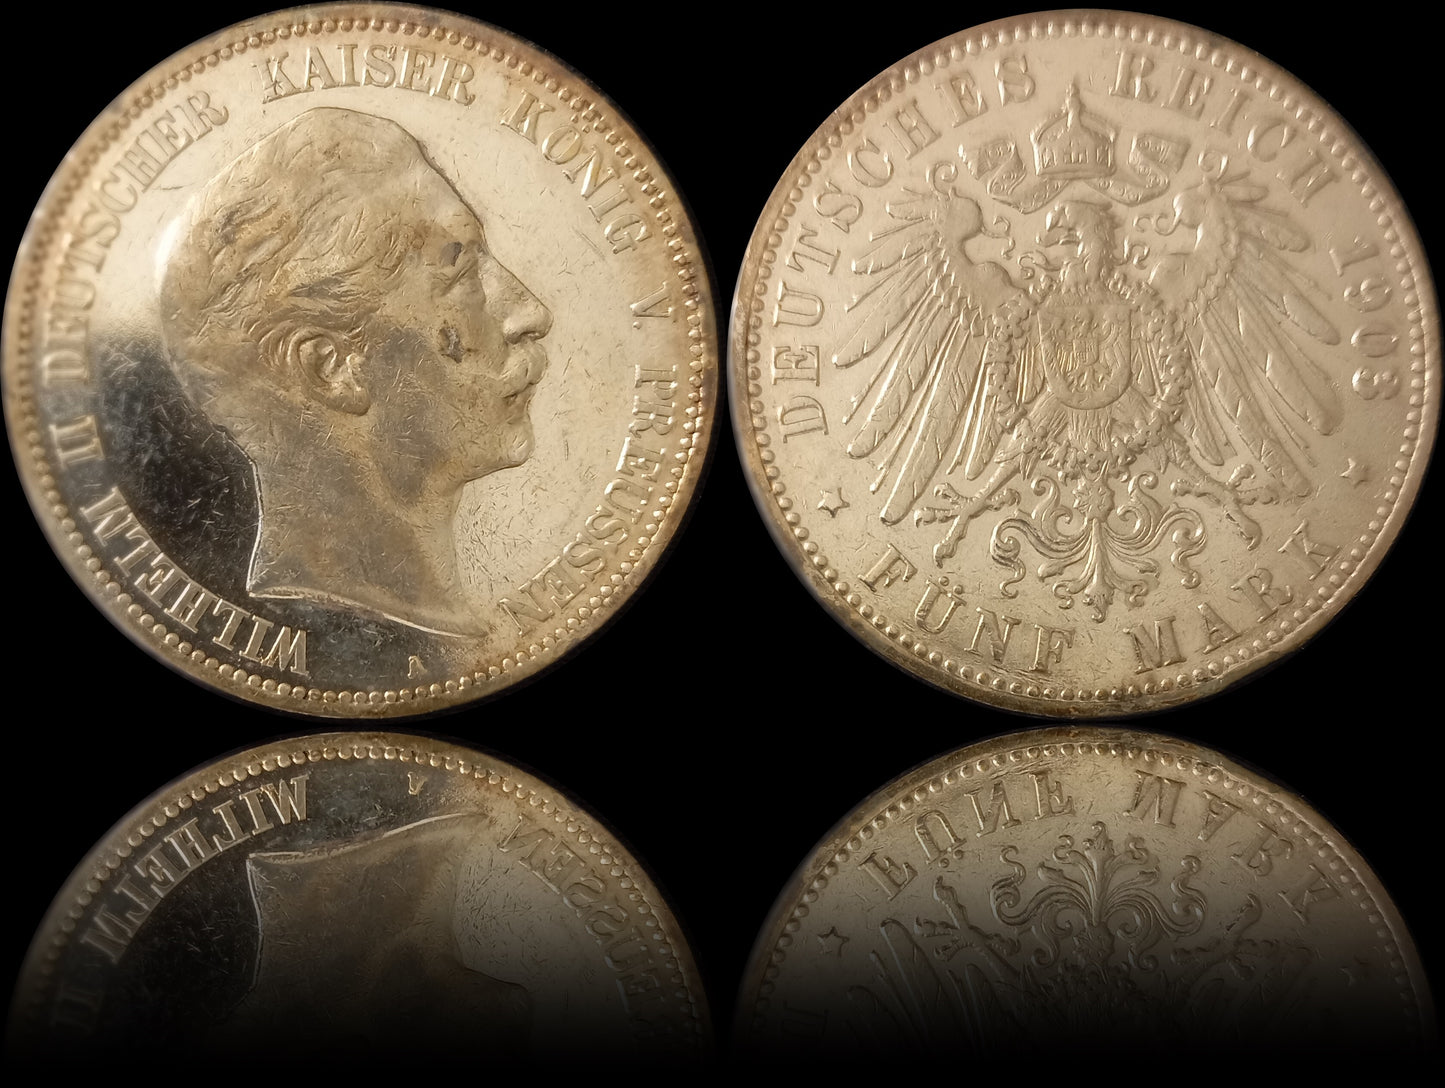 5 Mark Preußen 1903 A Silber, Kaiser Wilhelm II. Deutsches Kaiserreich, Jaeger-Nr. 104